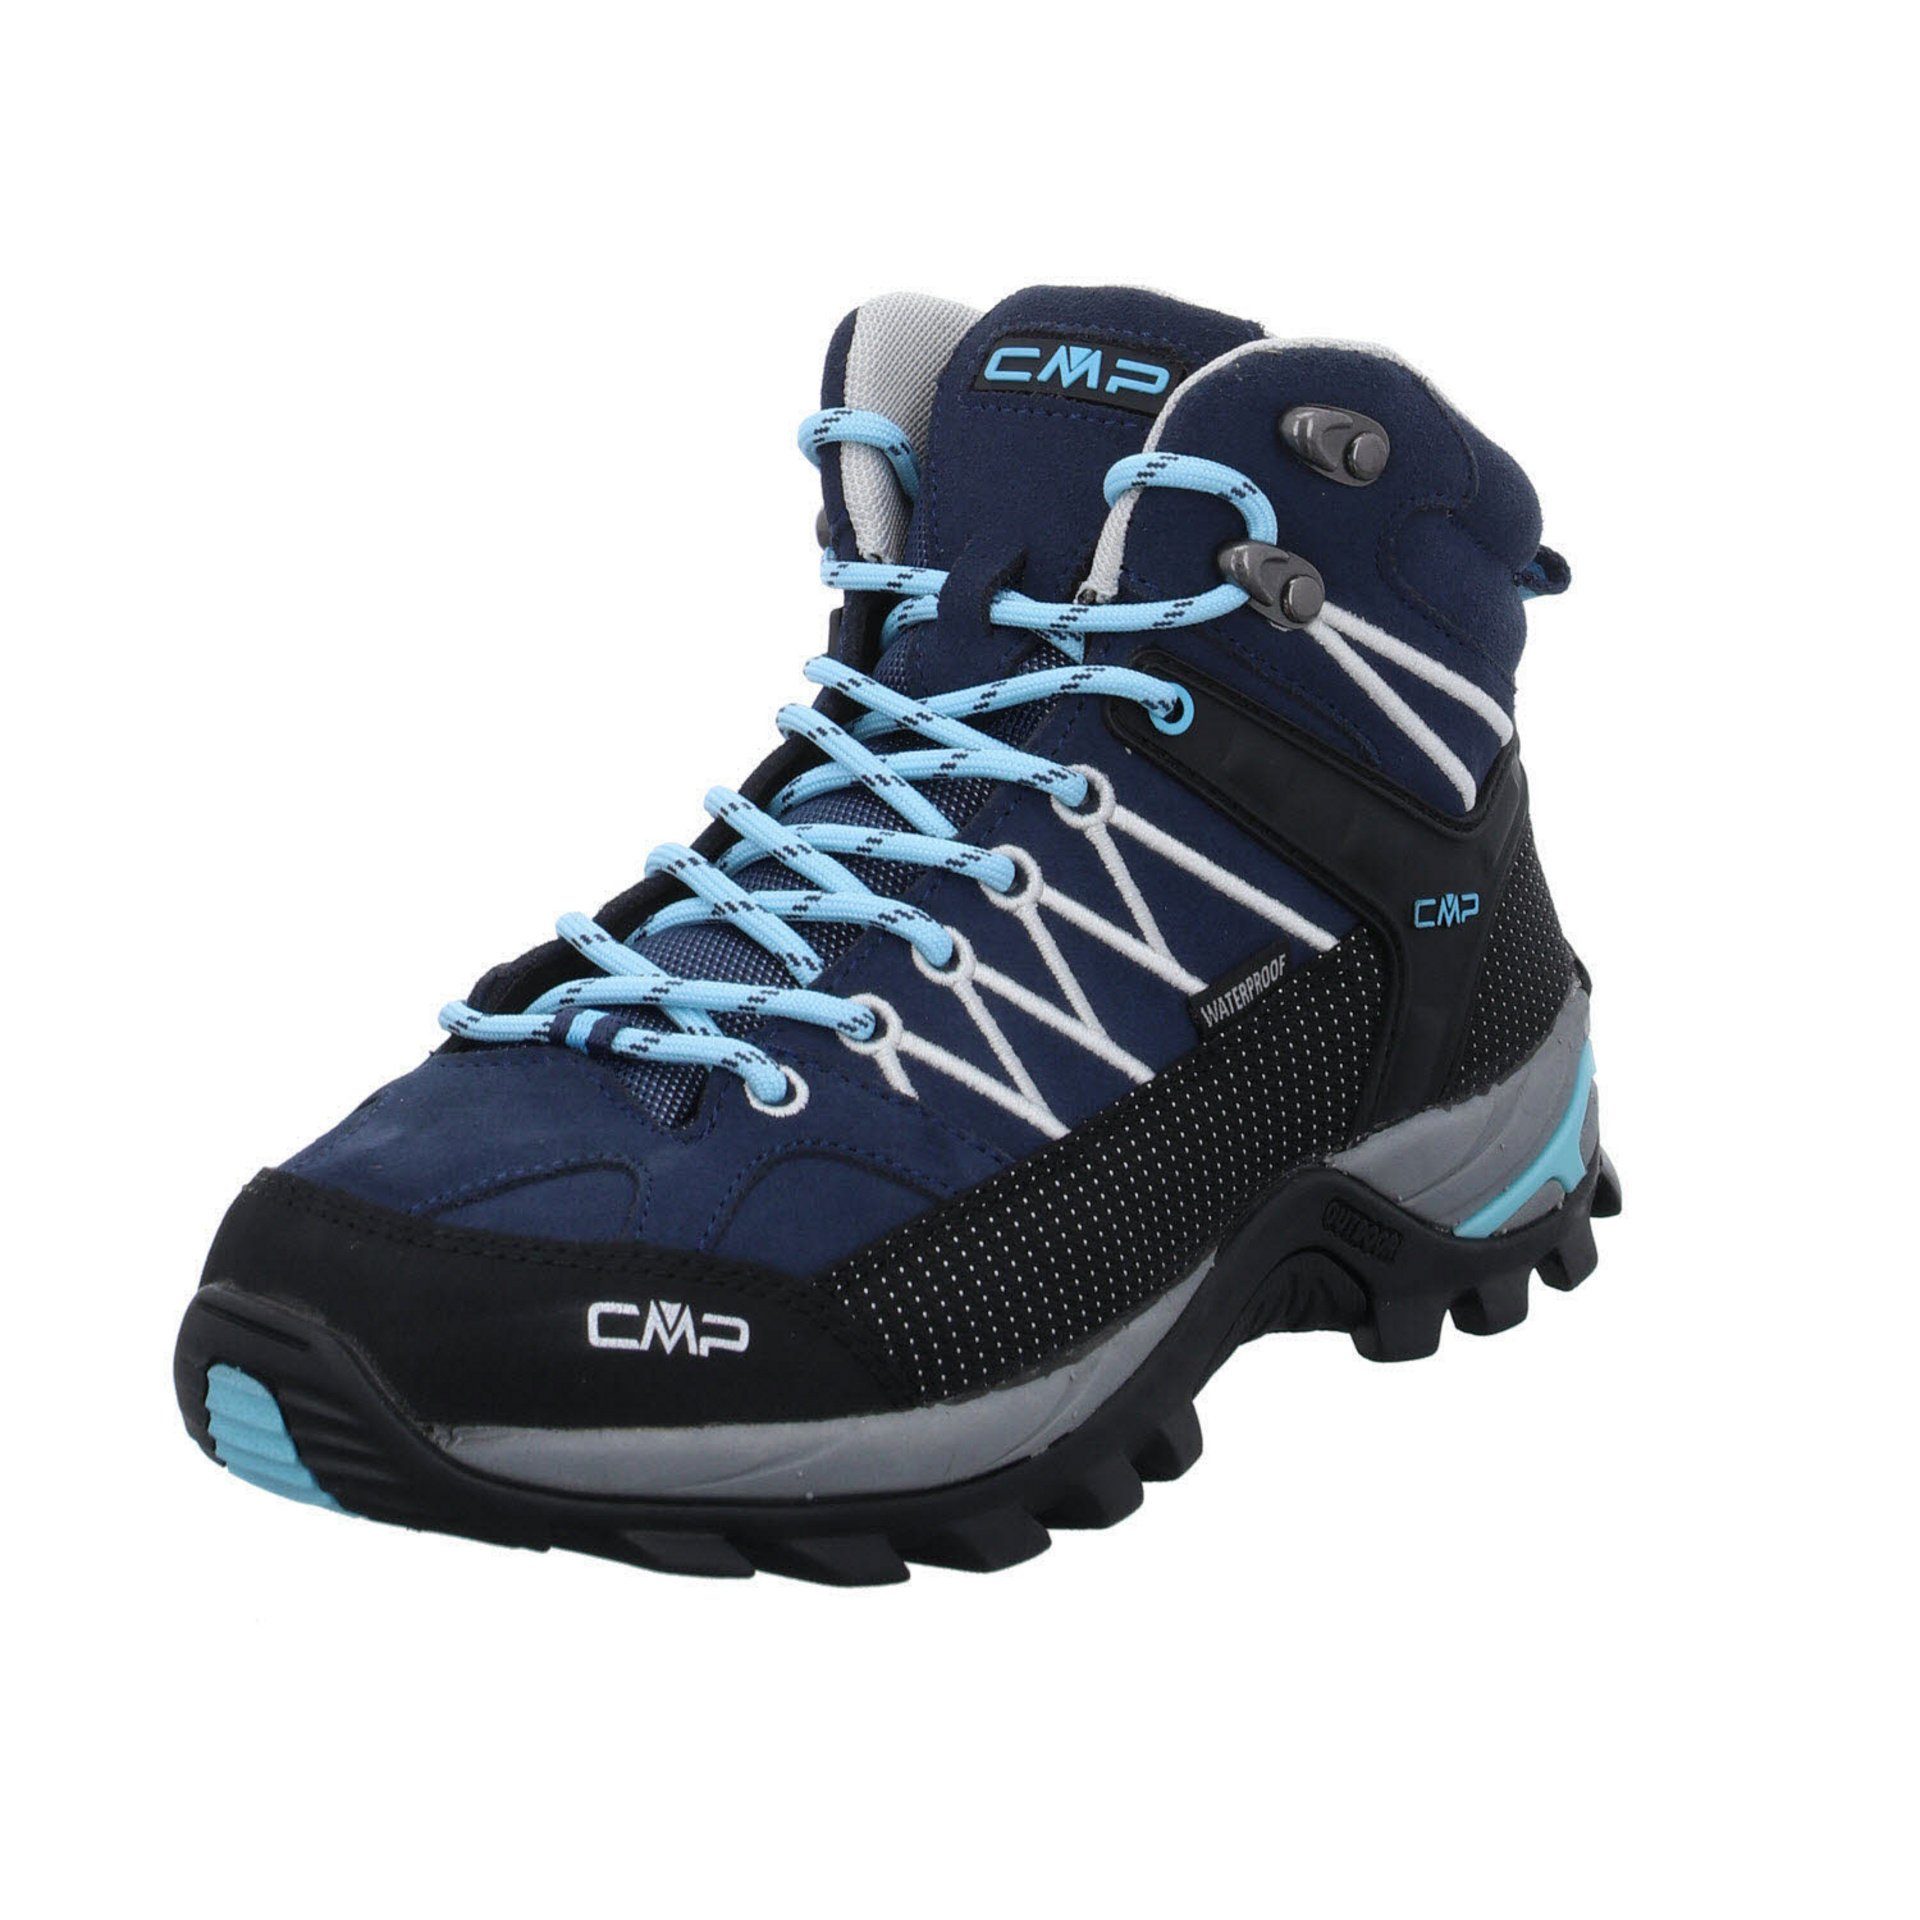 CAMPAGNOLO CMP blau Damen Schuhe Outdoor Outdoorschuh Rigel Outdoorschuh Leder-/Textilkombination Mid